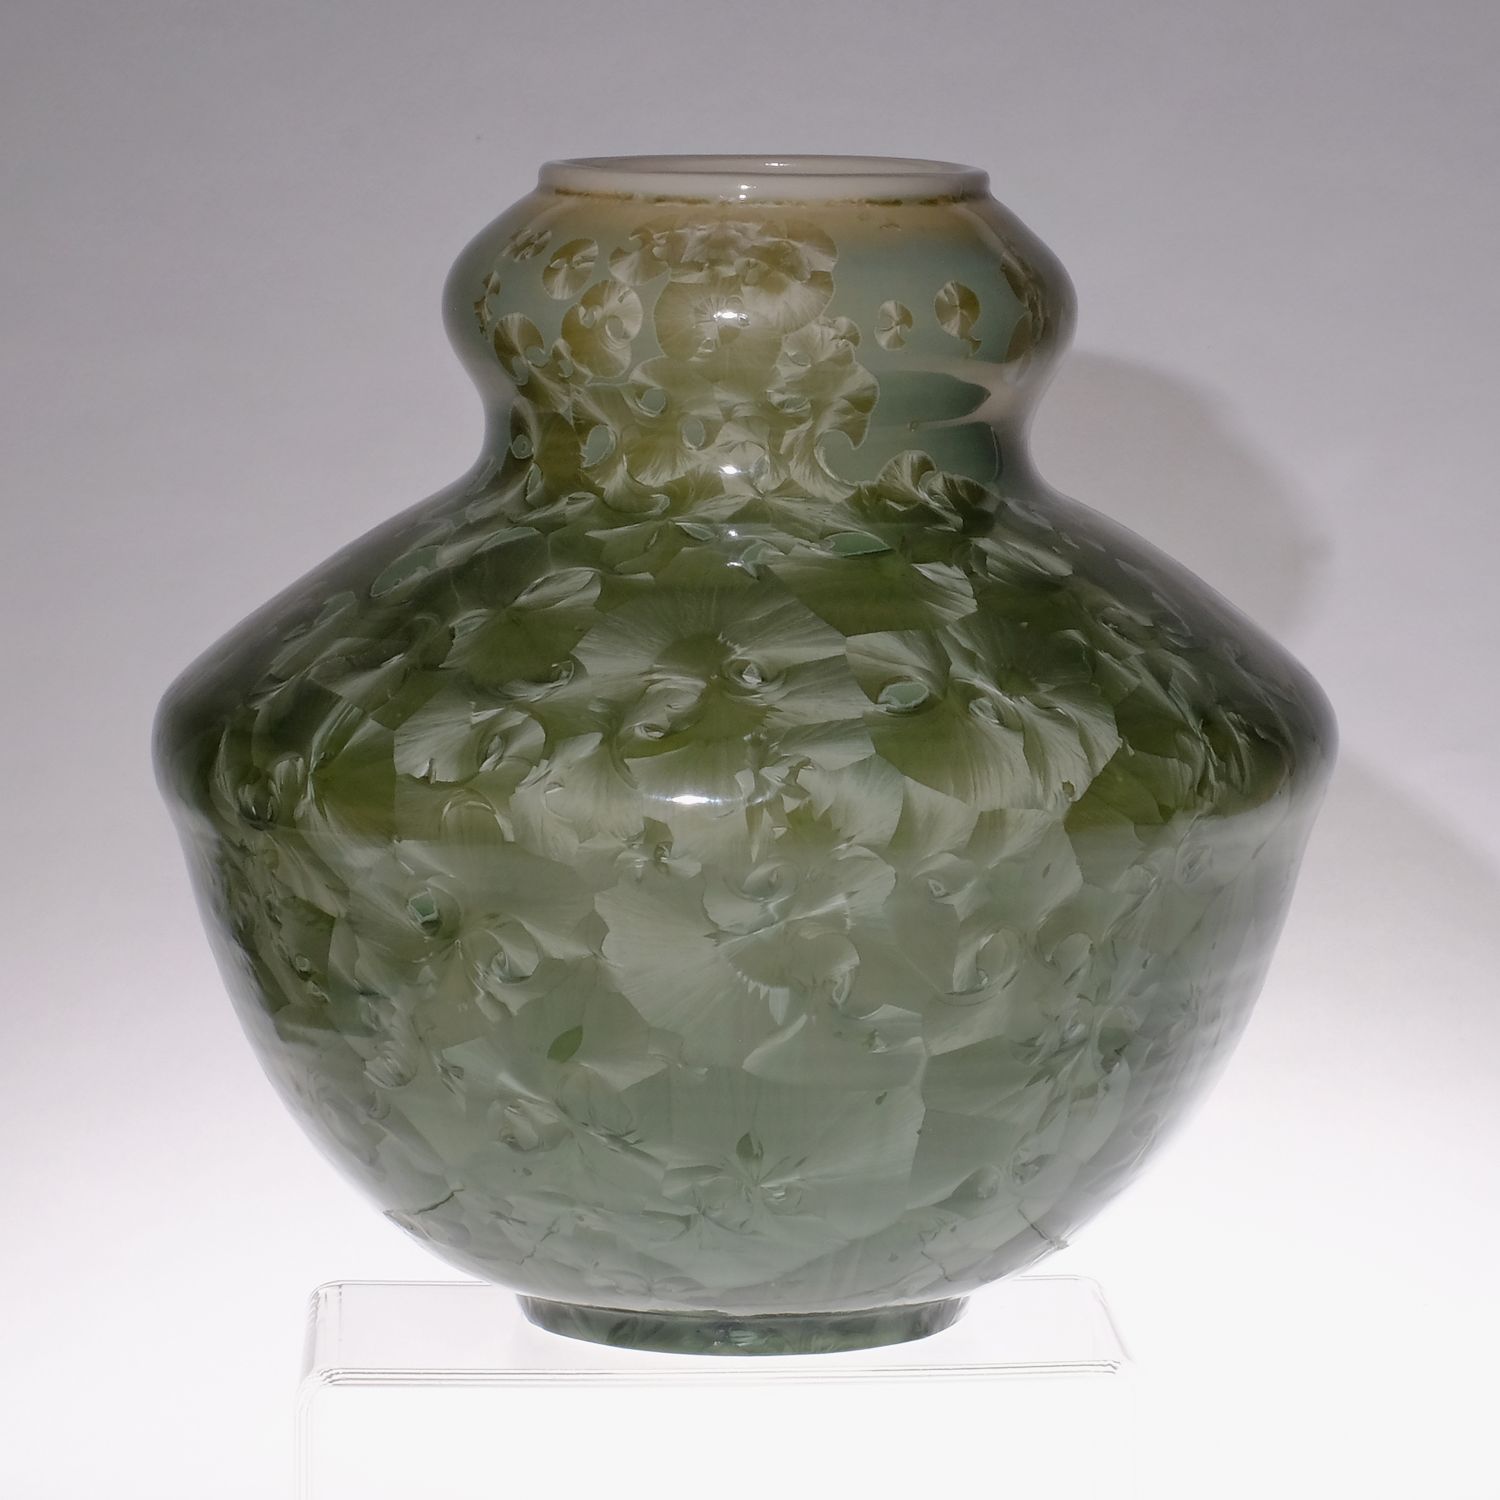 Yumiko Katsuya: Gold on Green Vase Product Image 1 of 4